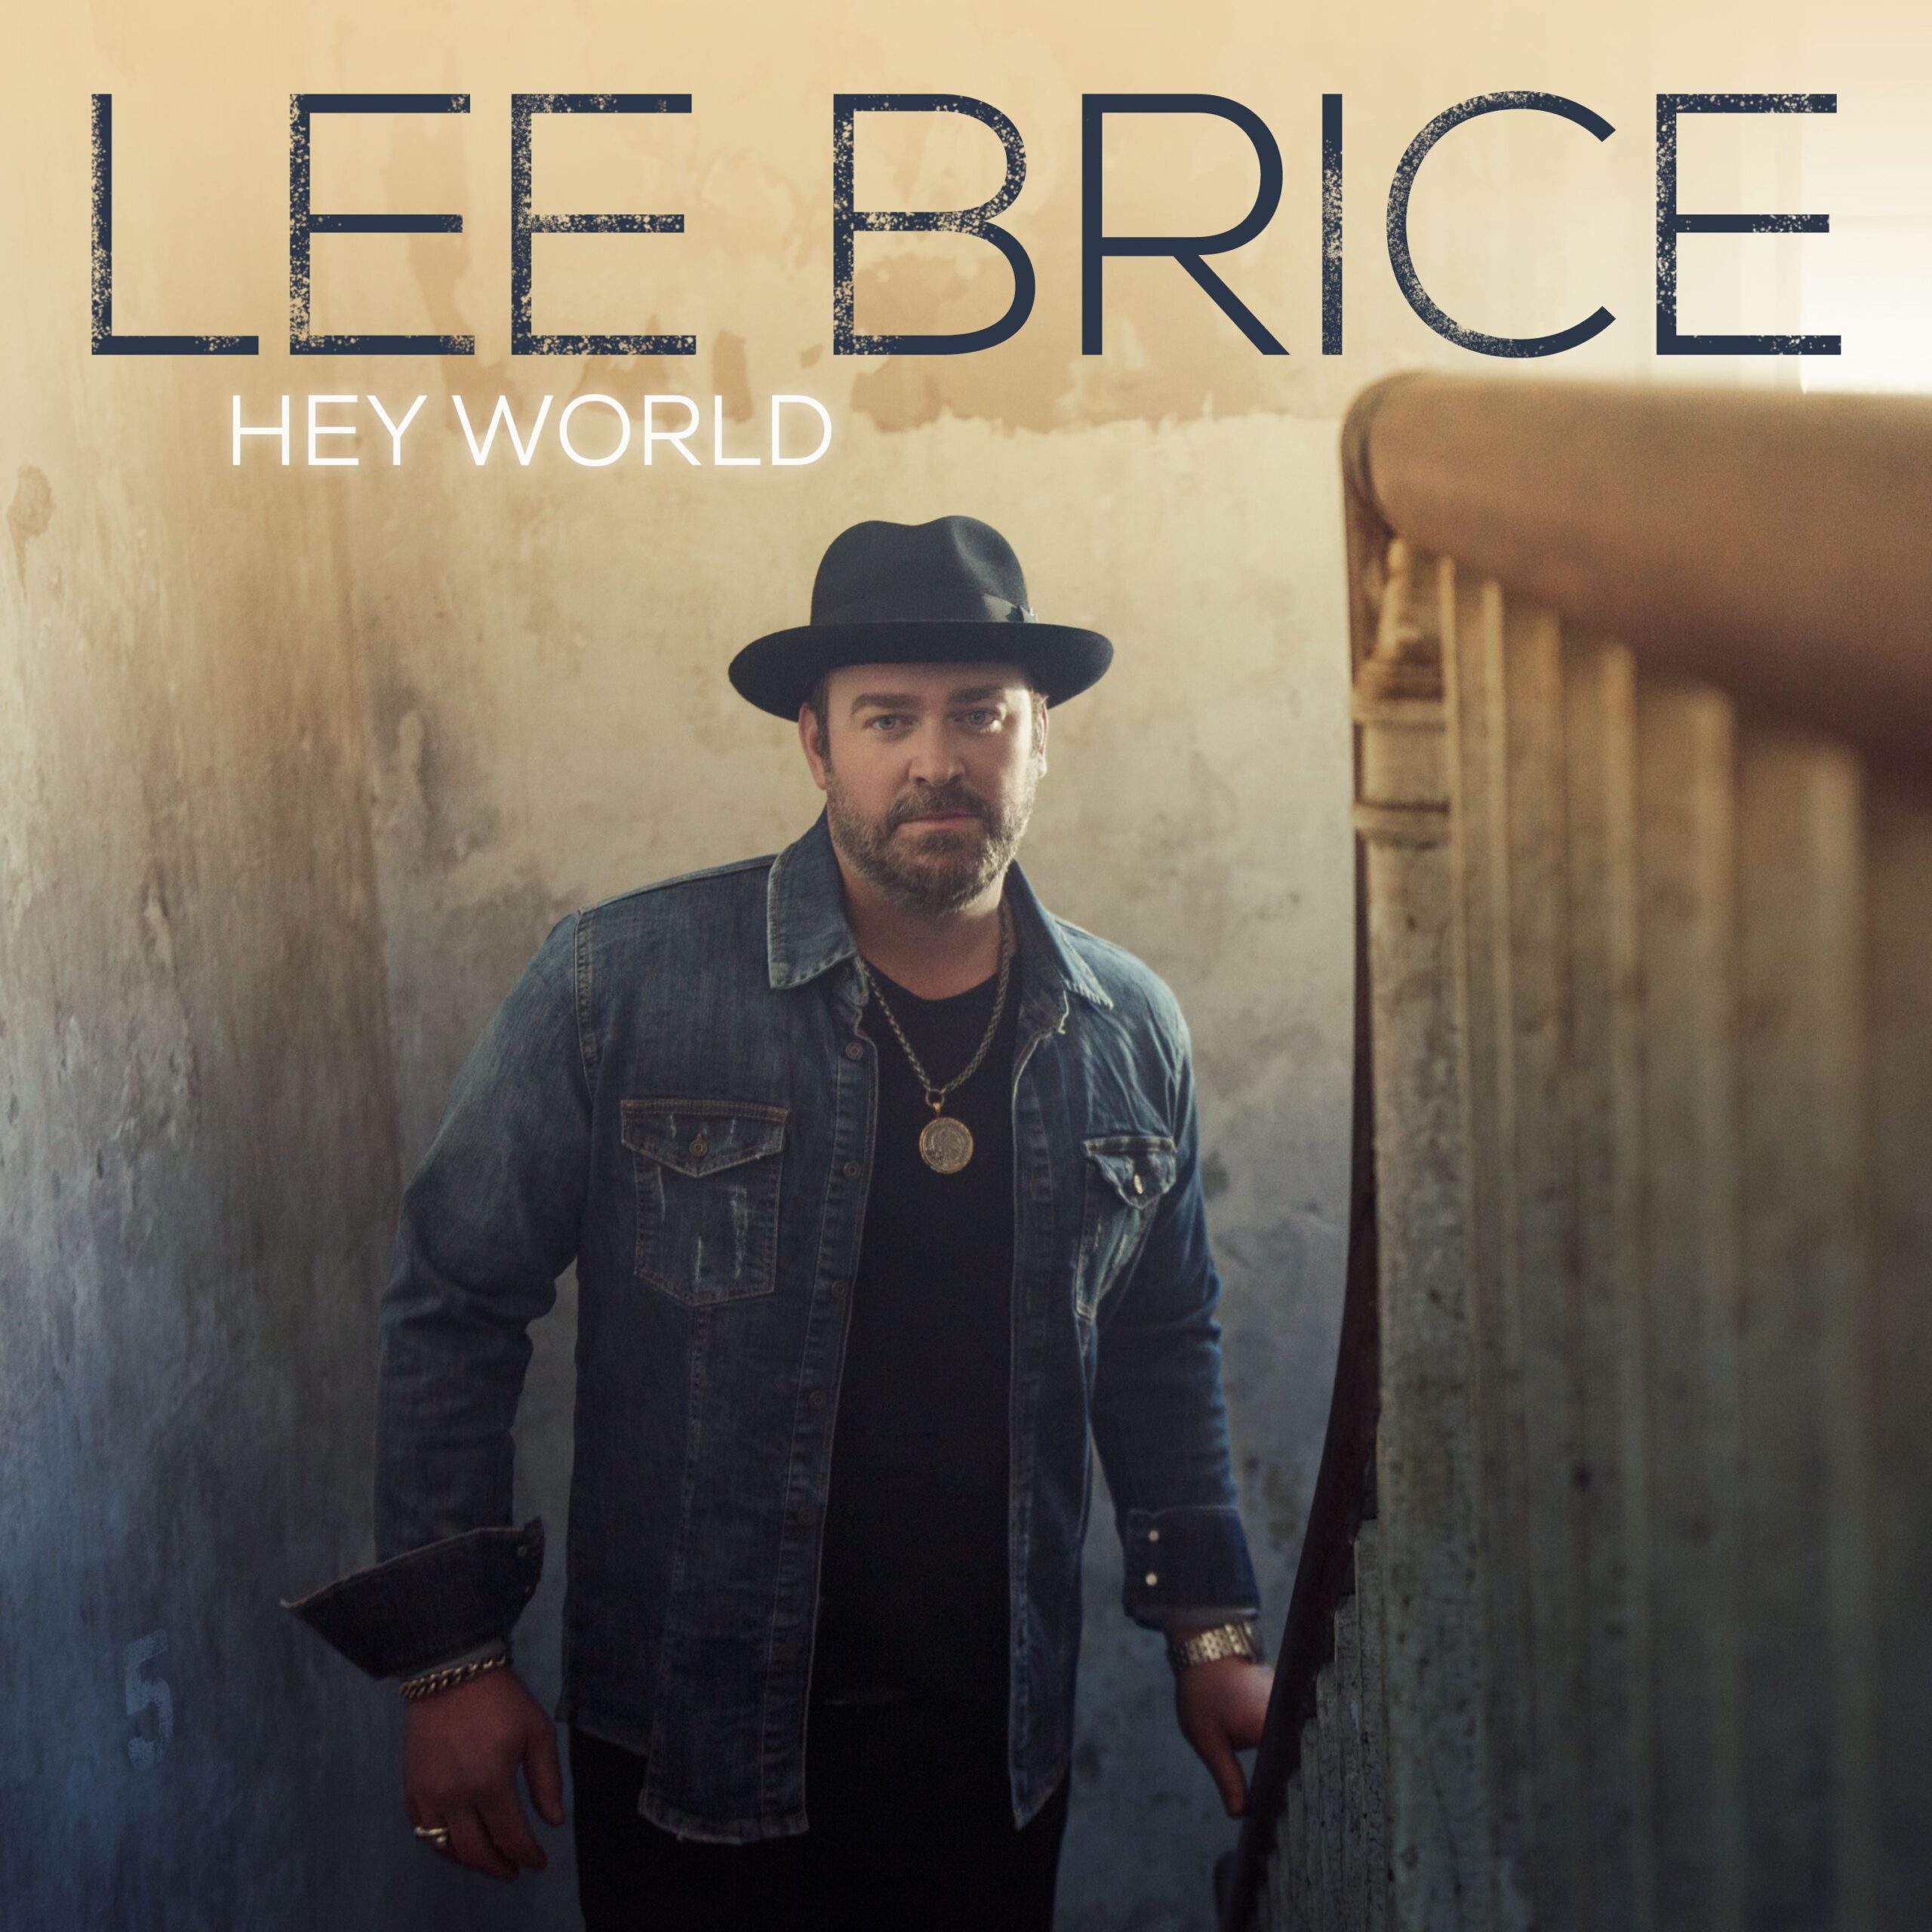 Lee Brice veröffentlicht sein neuestes Album Hey World – jetzt erhältlich